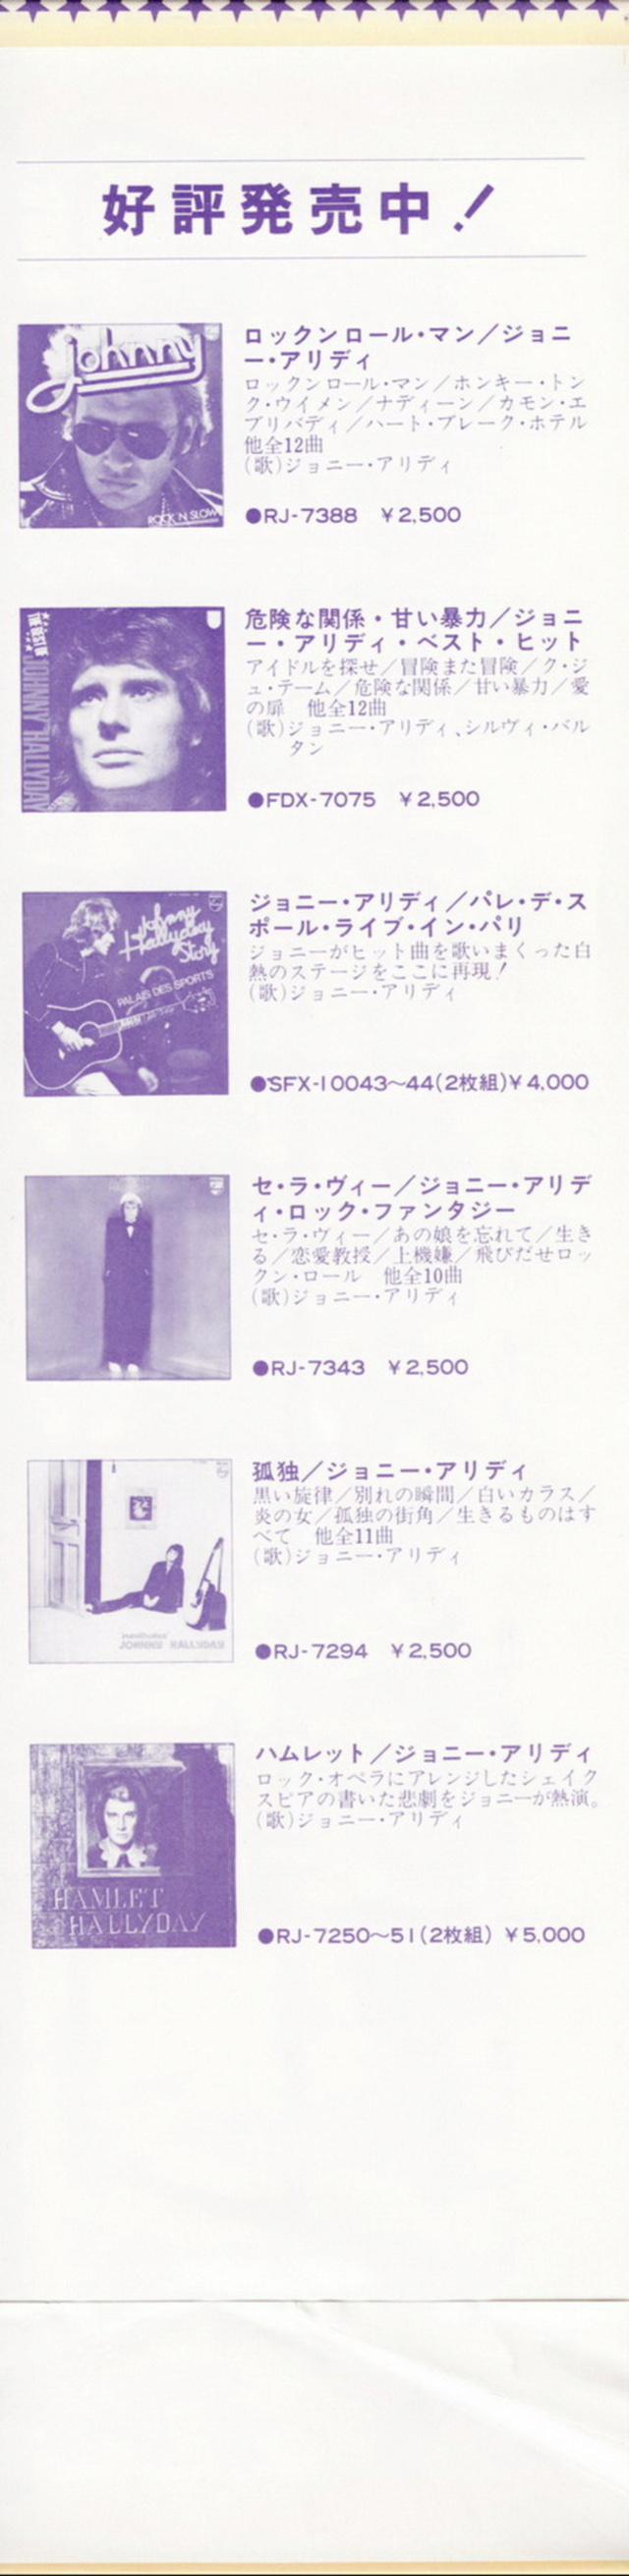 Discographie Japonaise - 4ème partie (33 T COMPILATION) - Page 16 Jpn_fd30